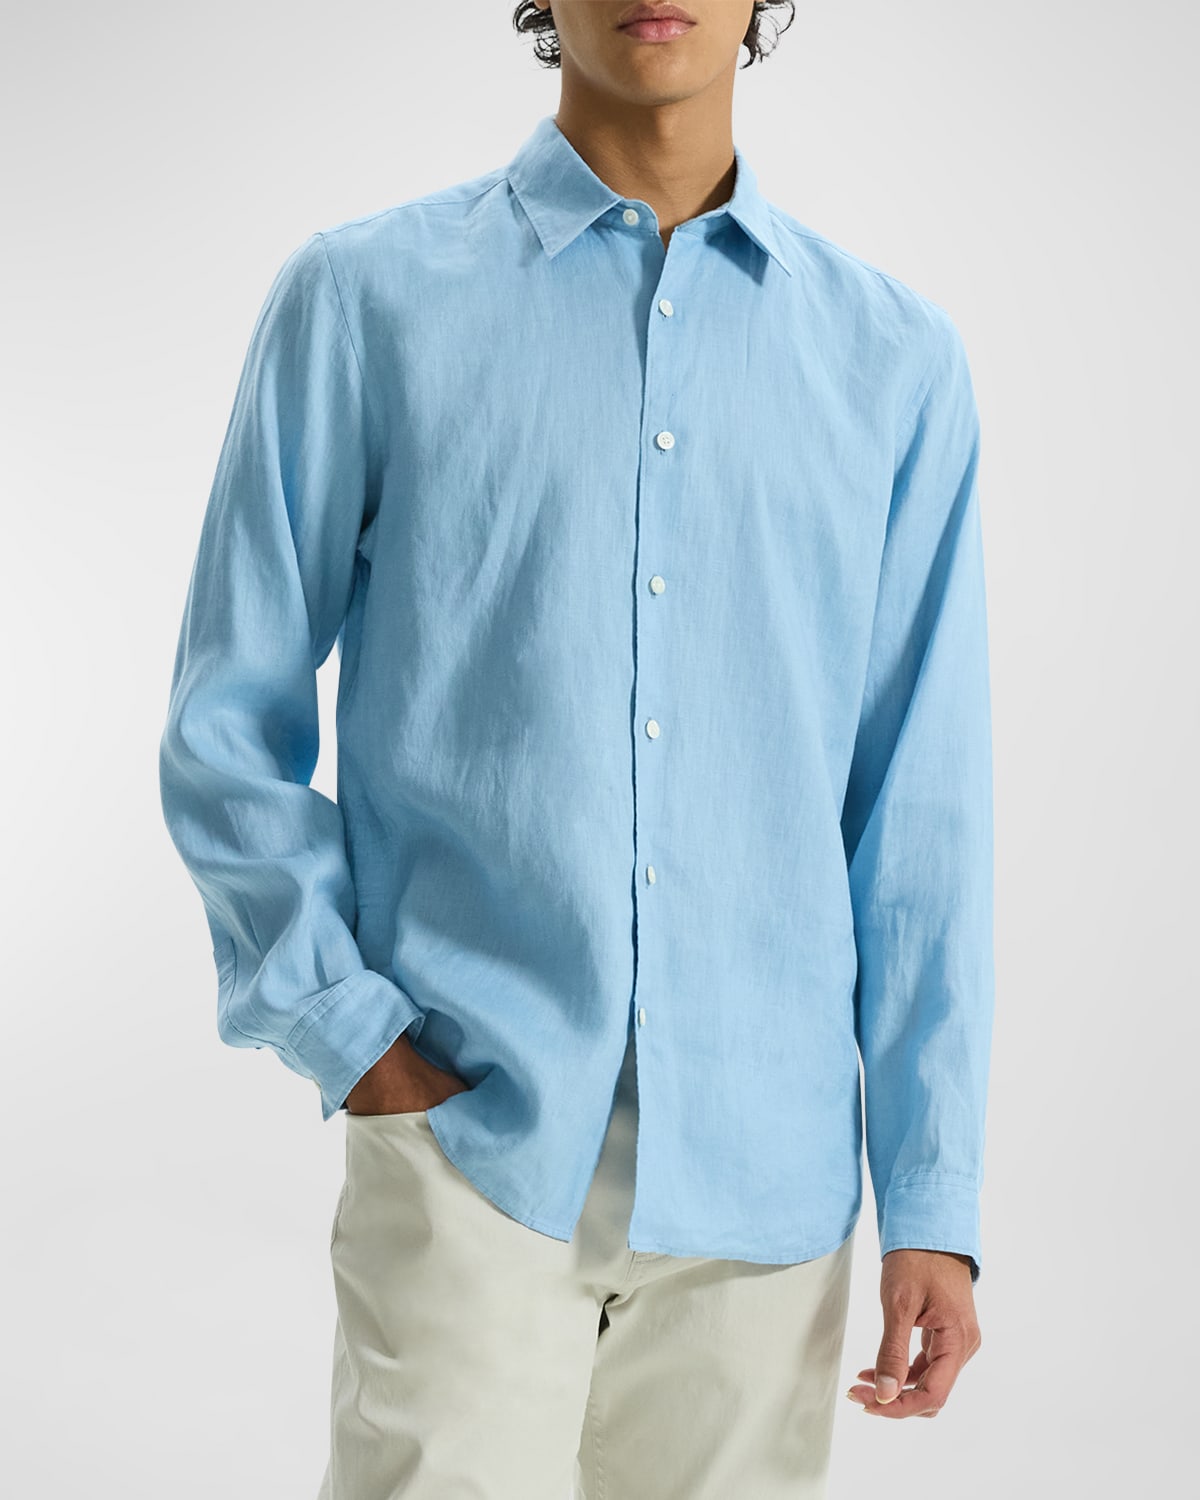 Men's Solid Linen Sport Shirt